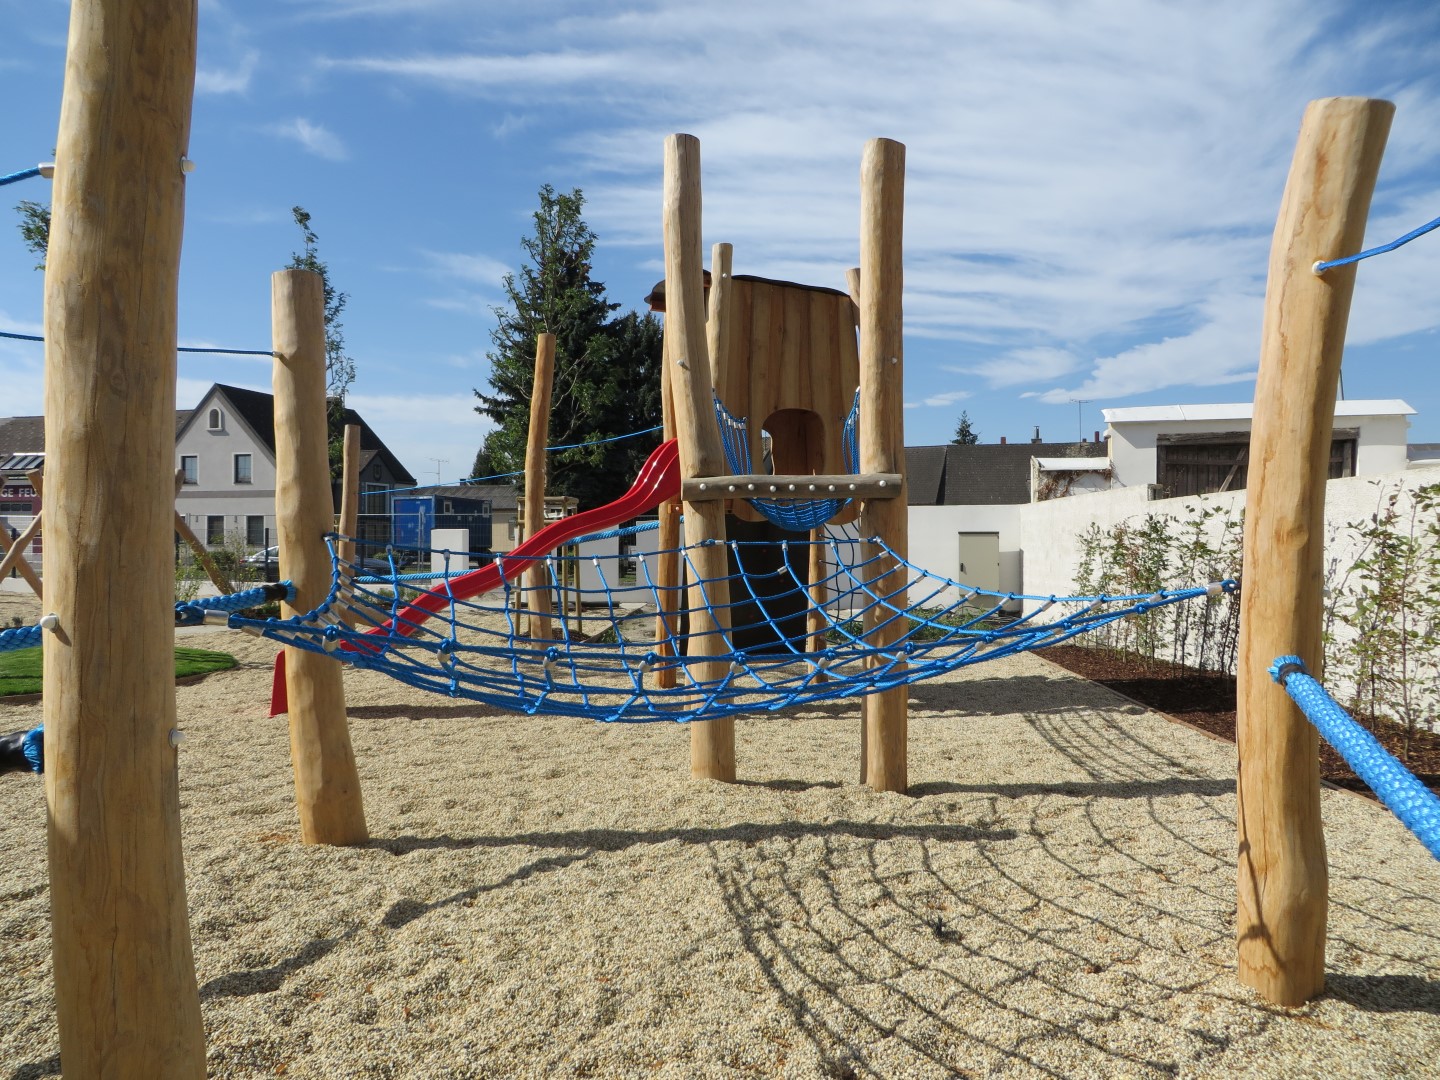 Kletteranlage Mia mit Netzen an Holzpalisaden befestigt für die Kinder